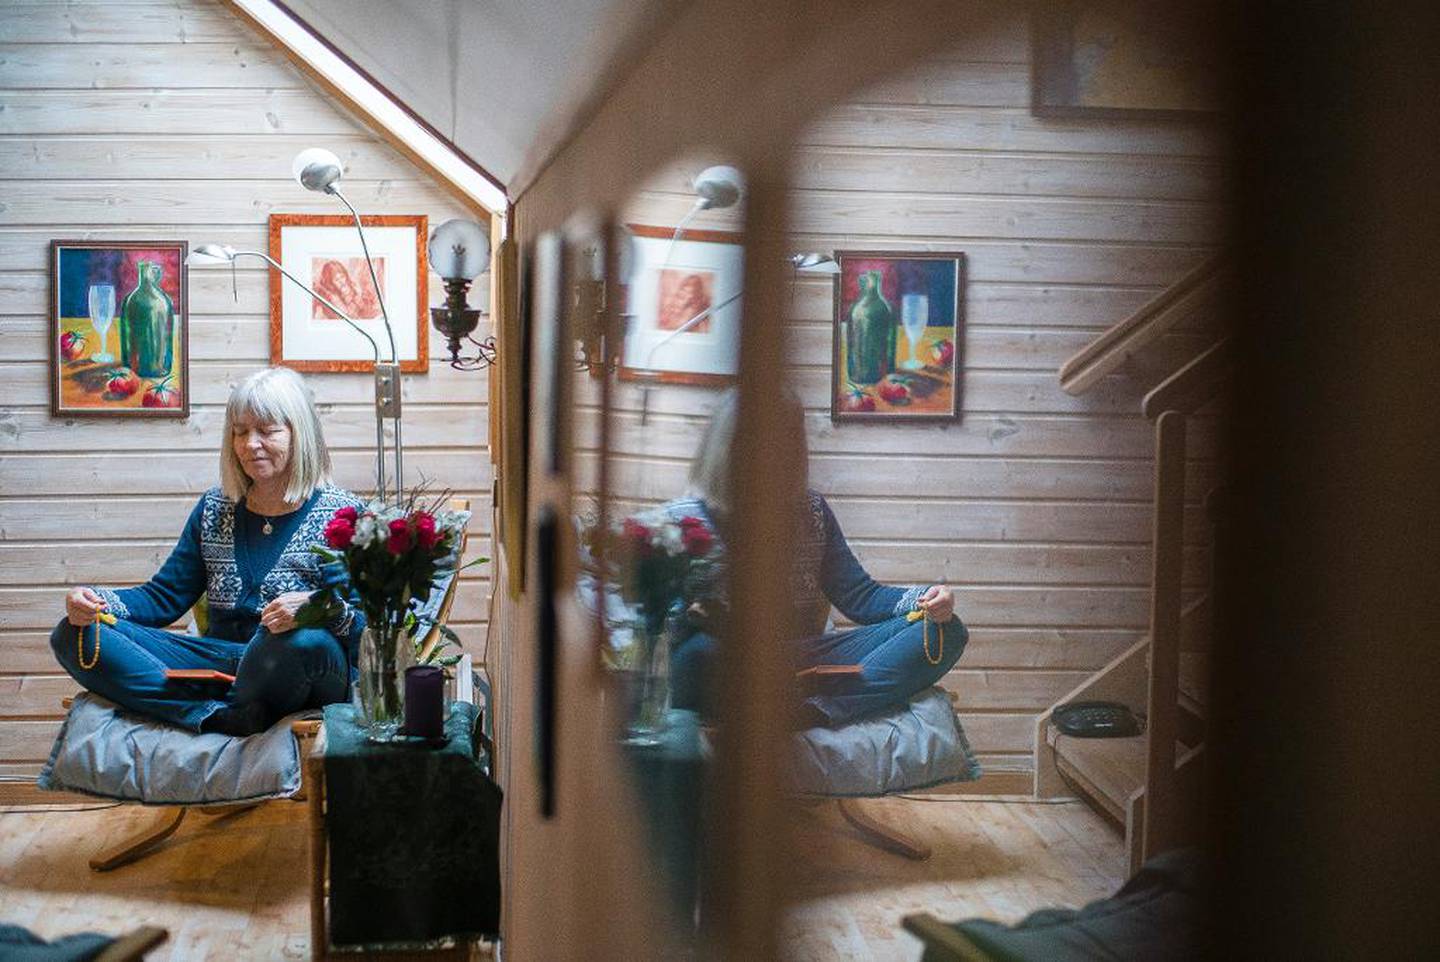 I et rekkehus på Skedsmo bor en av lederne i den norske grenen av Inayat Khans sufibevegelse. Hun heter Kirsten Arnesen og har tatt tilnavnet Alia etter at hun ble innviet i ordenen.